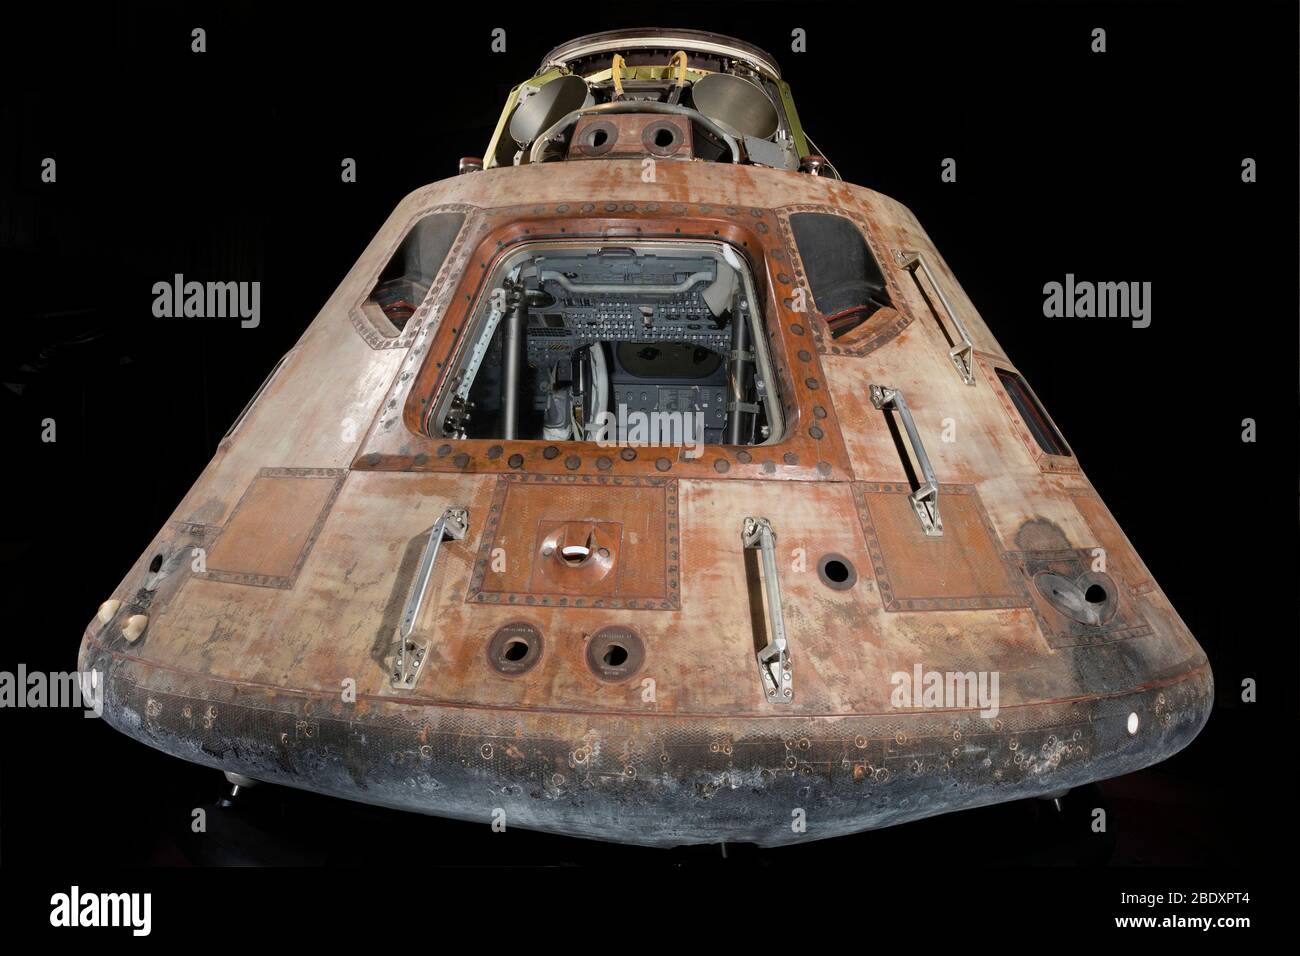 Modulo di comando Apollo 11 Foto Stock